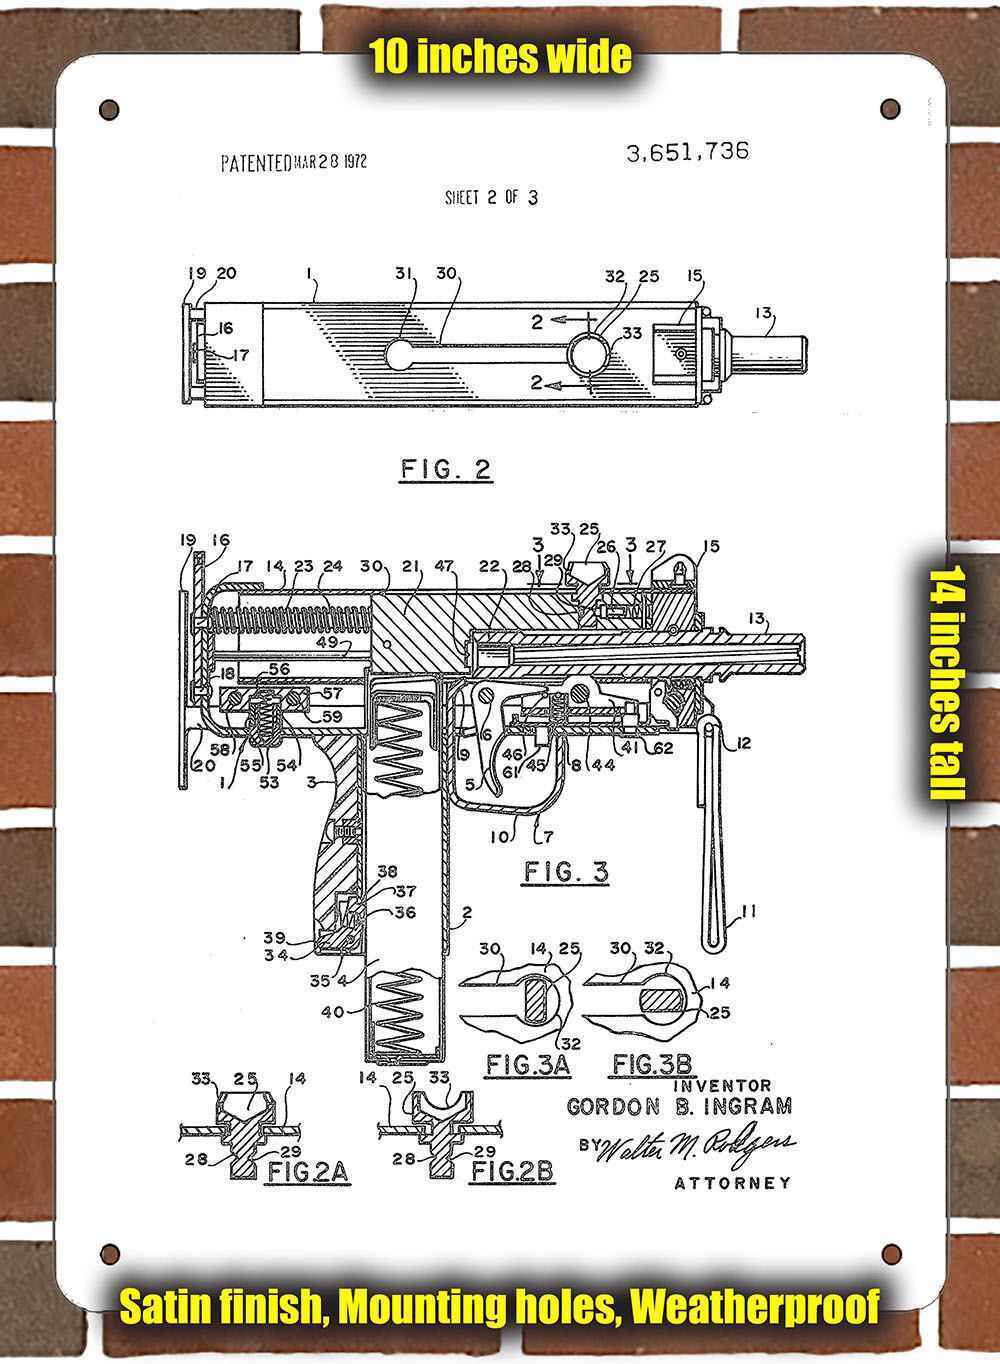 Metal Sign - 1972 Ingram Mac-10 Patent- 10x14 inches